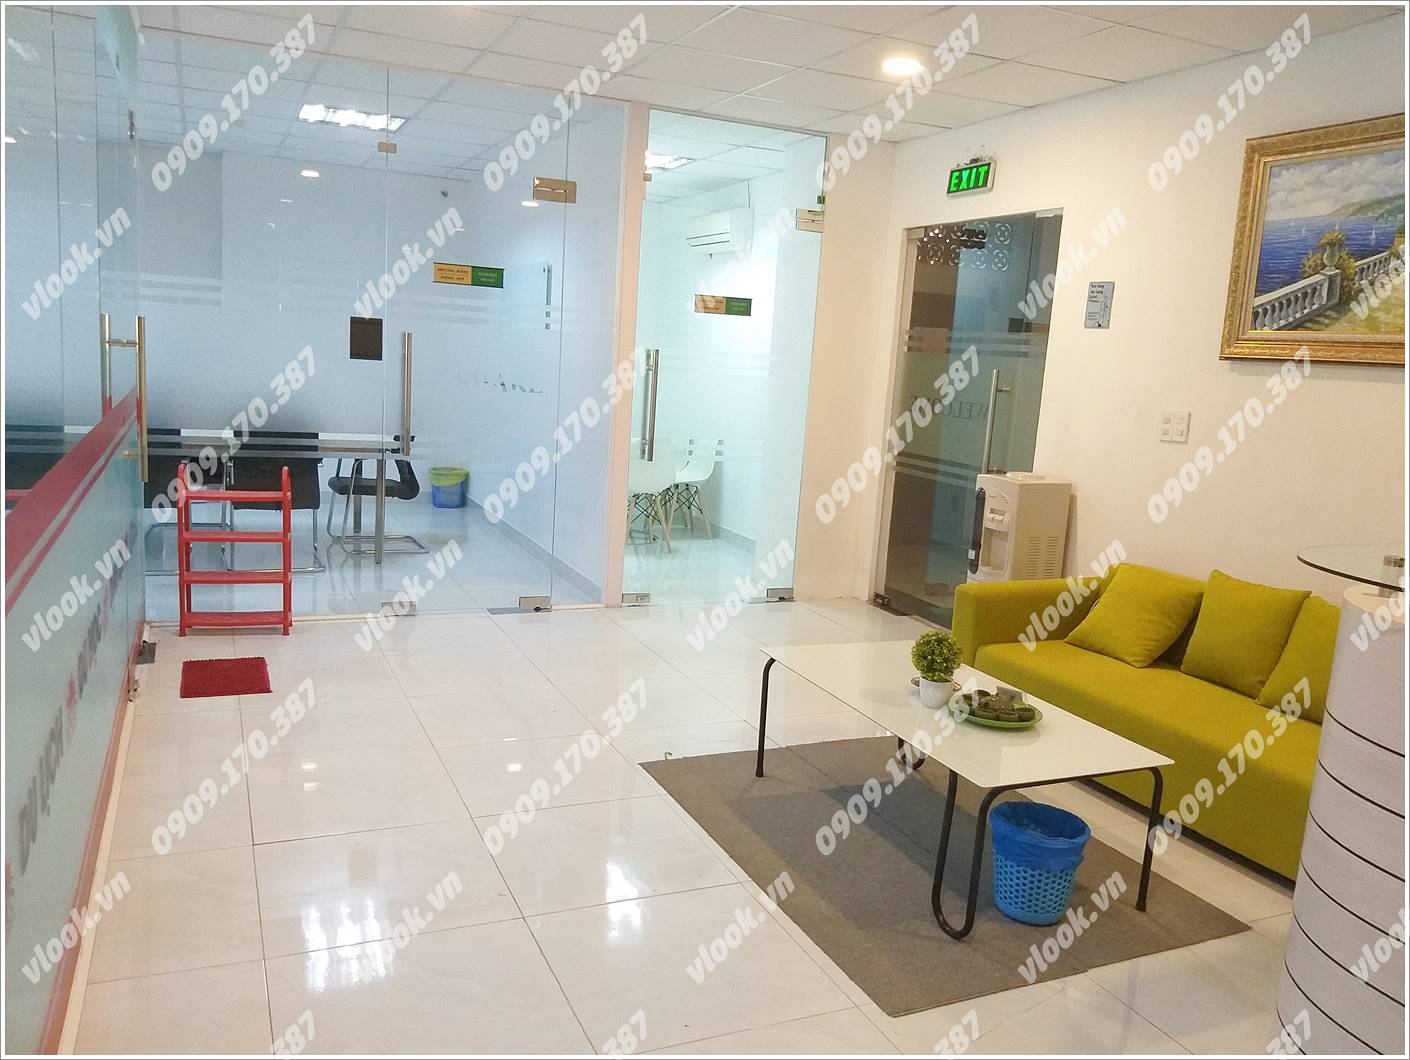 Cao ốc văn phòng cho thuê Phúc Thịnh Building, Cao Thắng, Quận 3 TP.HCM - vlook.vn